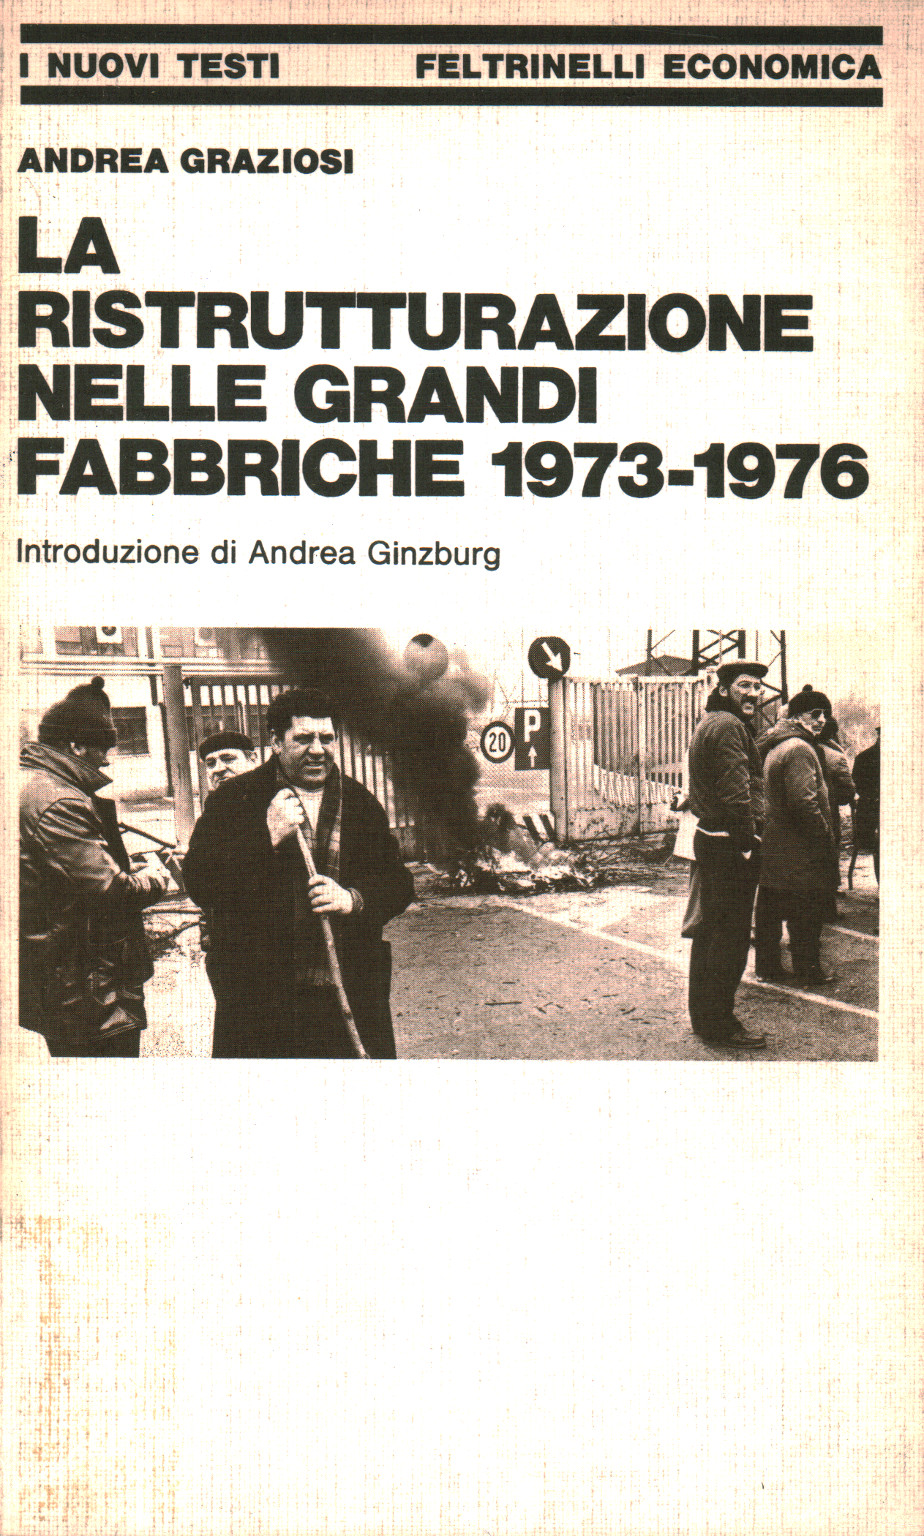 La ristrutturazione nelle grandi fabbriche 1973-19, s.a.